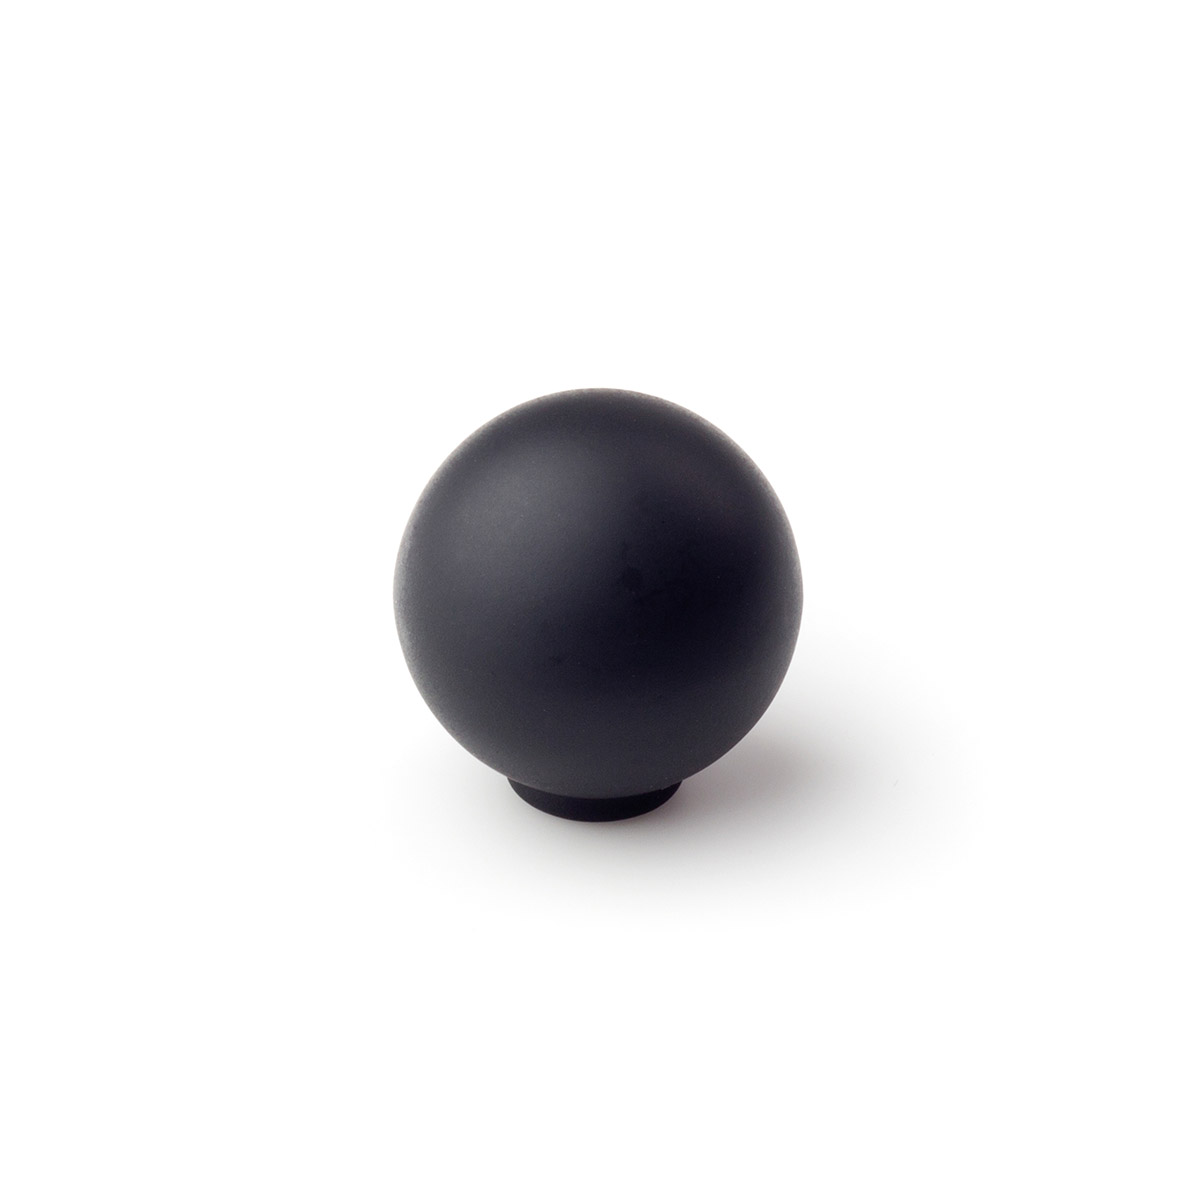 Pomo de plástico con acabado negro mate, dimensiones: 28x28x29mm Ø: 28mm